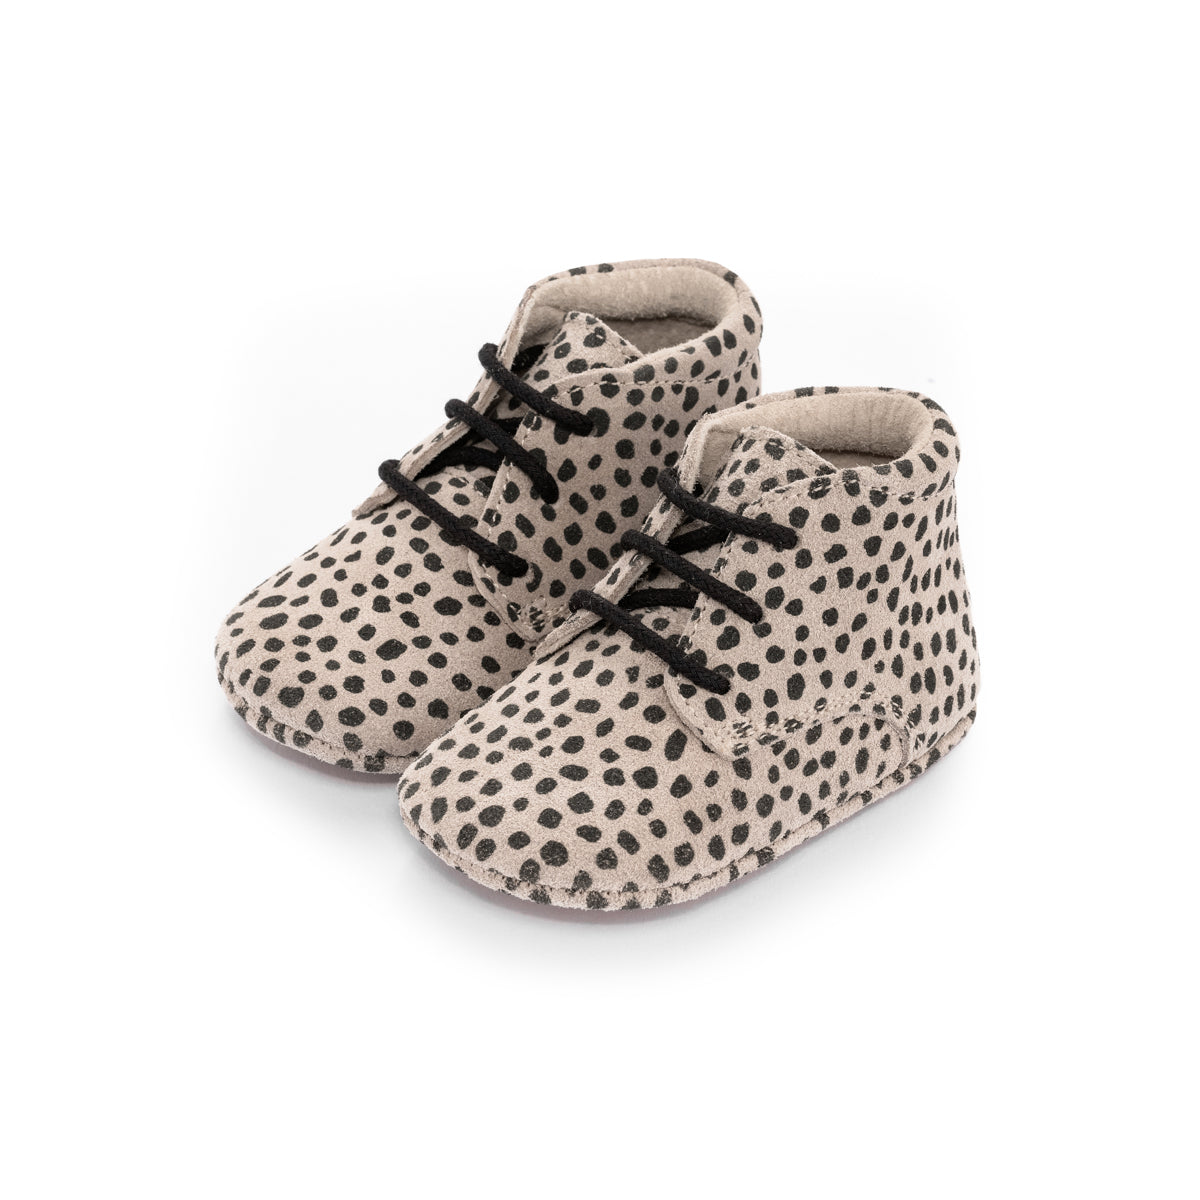 Op zoek naar stijlvolle (eerste) schoentjes van goede kwaliteit? Dat zijn de Mavies classic boots speckle sand. Deze babyschoenen hebben een boots model en zijn van zandkleurig suèdeleer met spikkels. VanZus